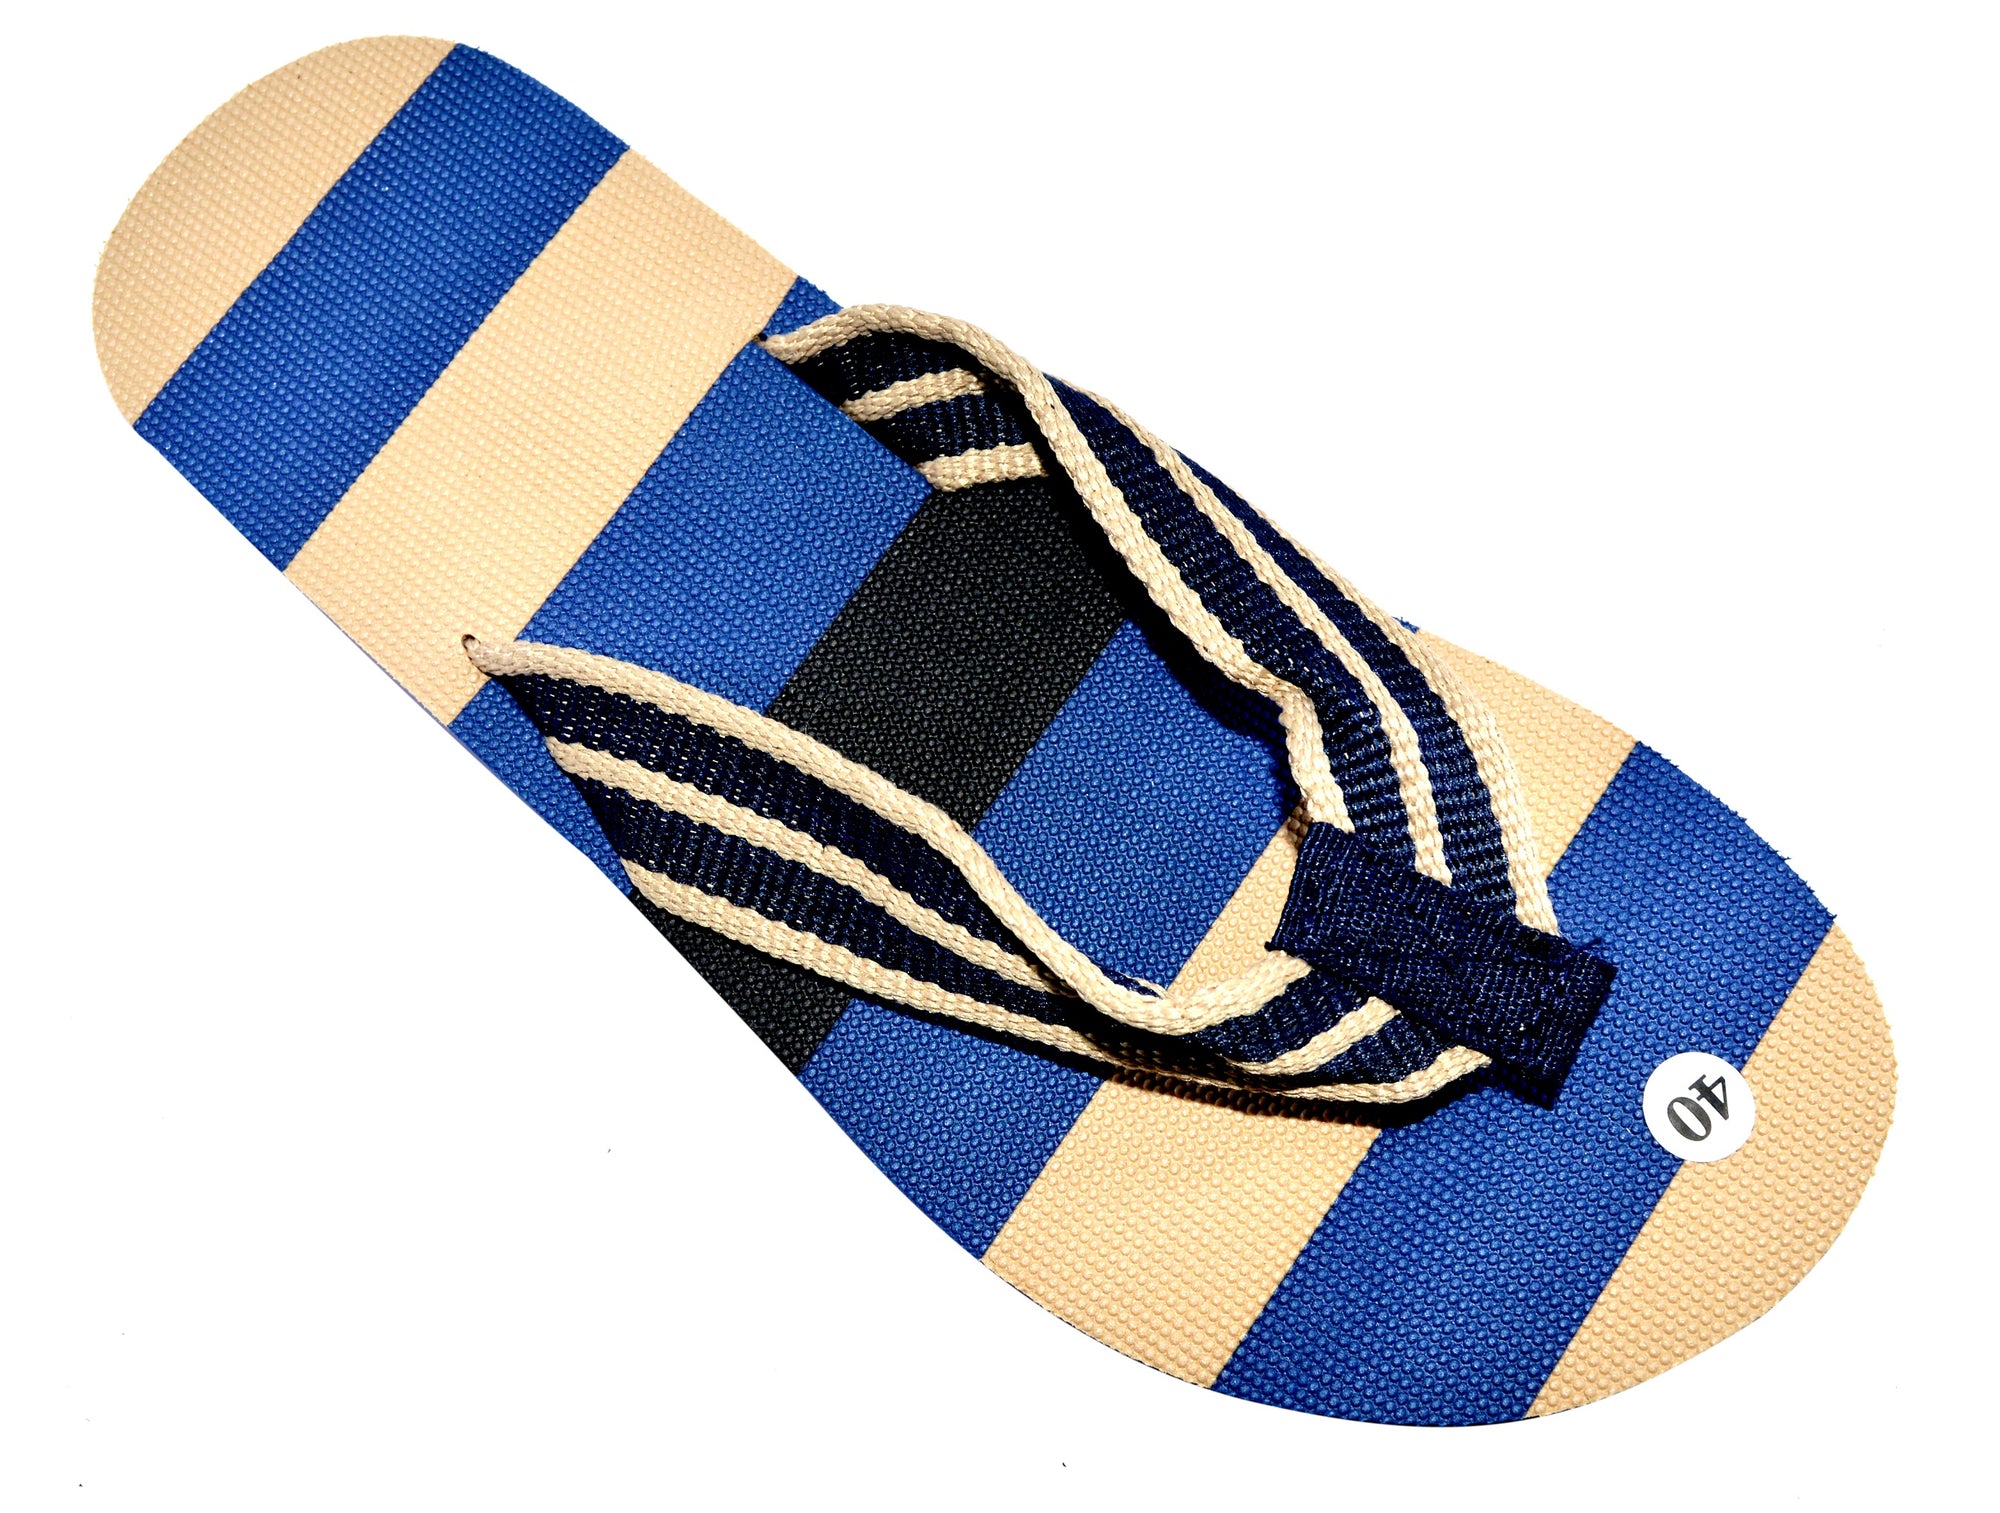 OCTAVE Mens Striped Comfort Strap Design Flip Flops - Navy